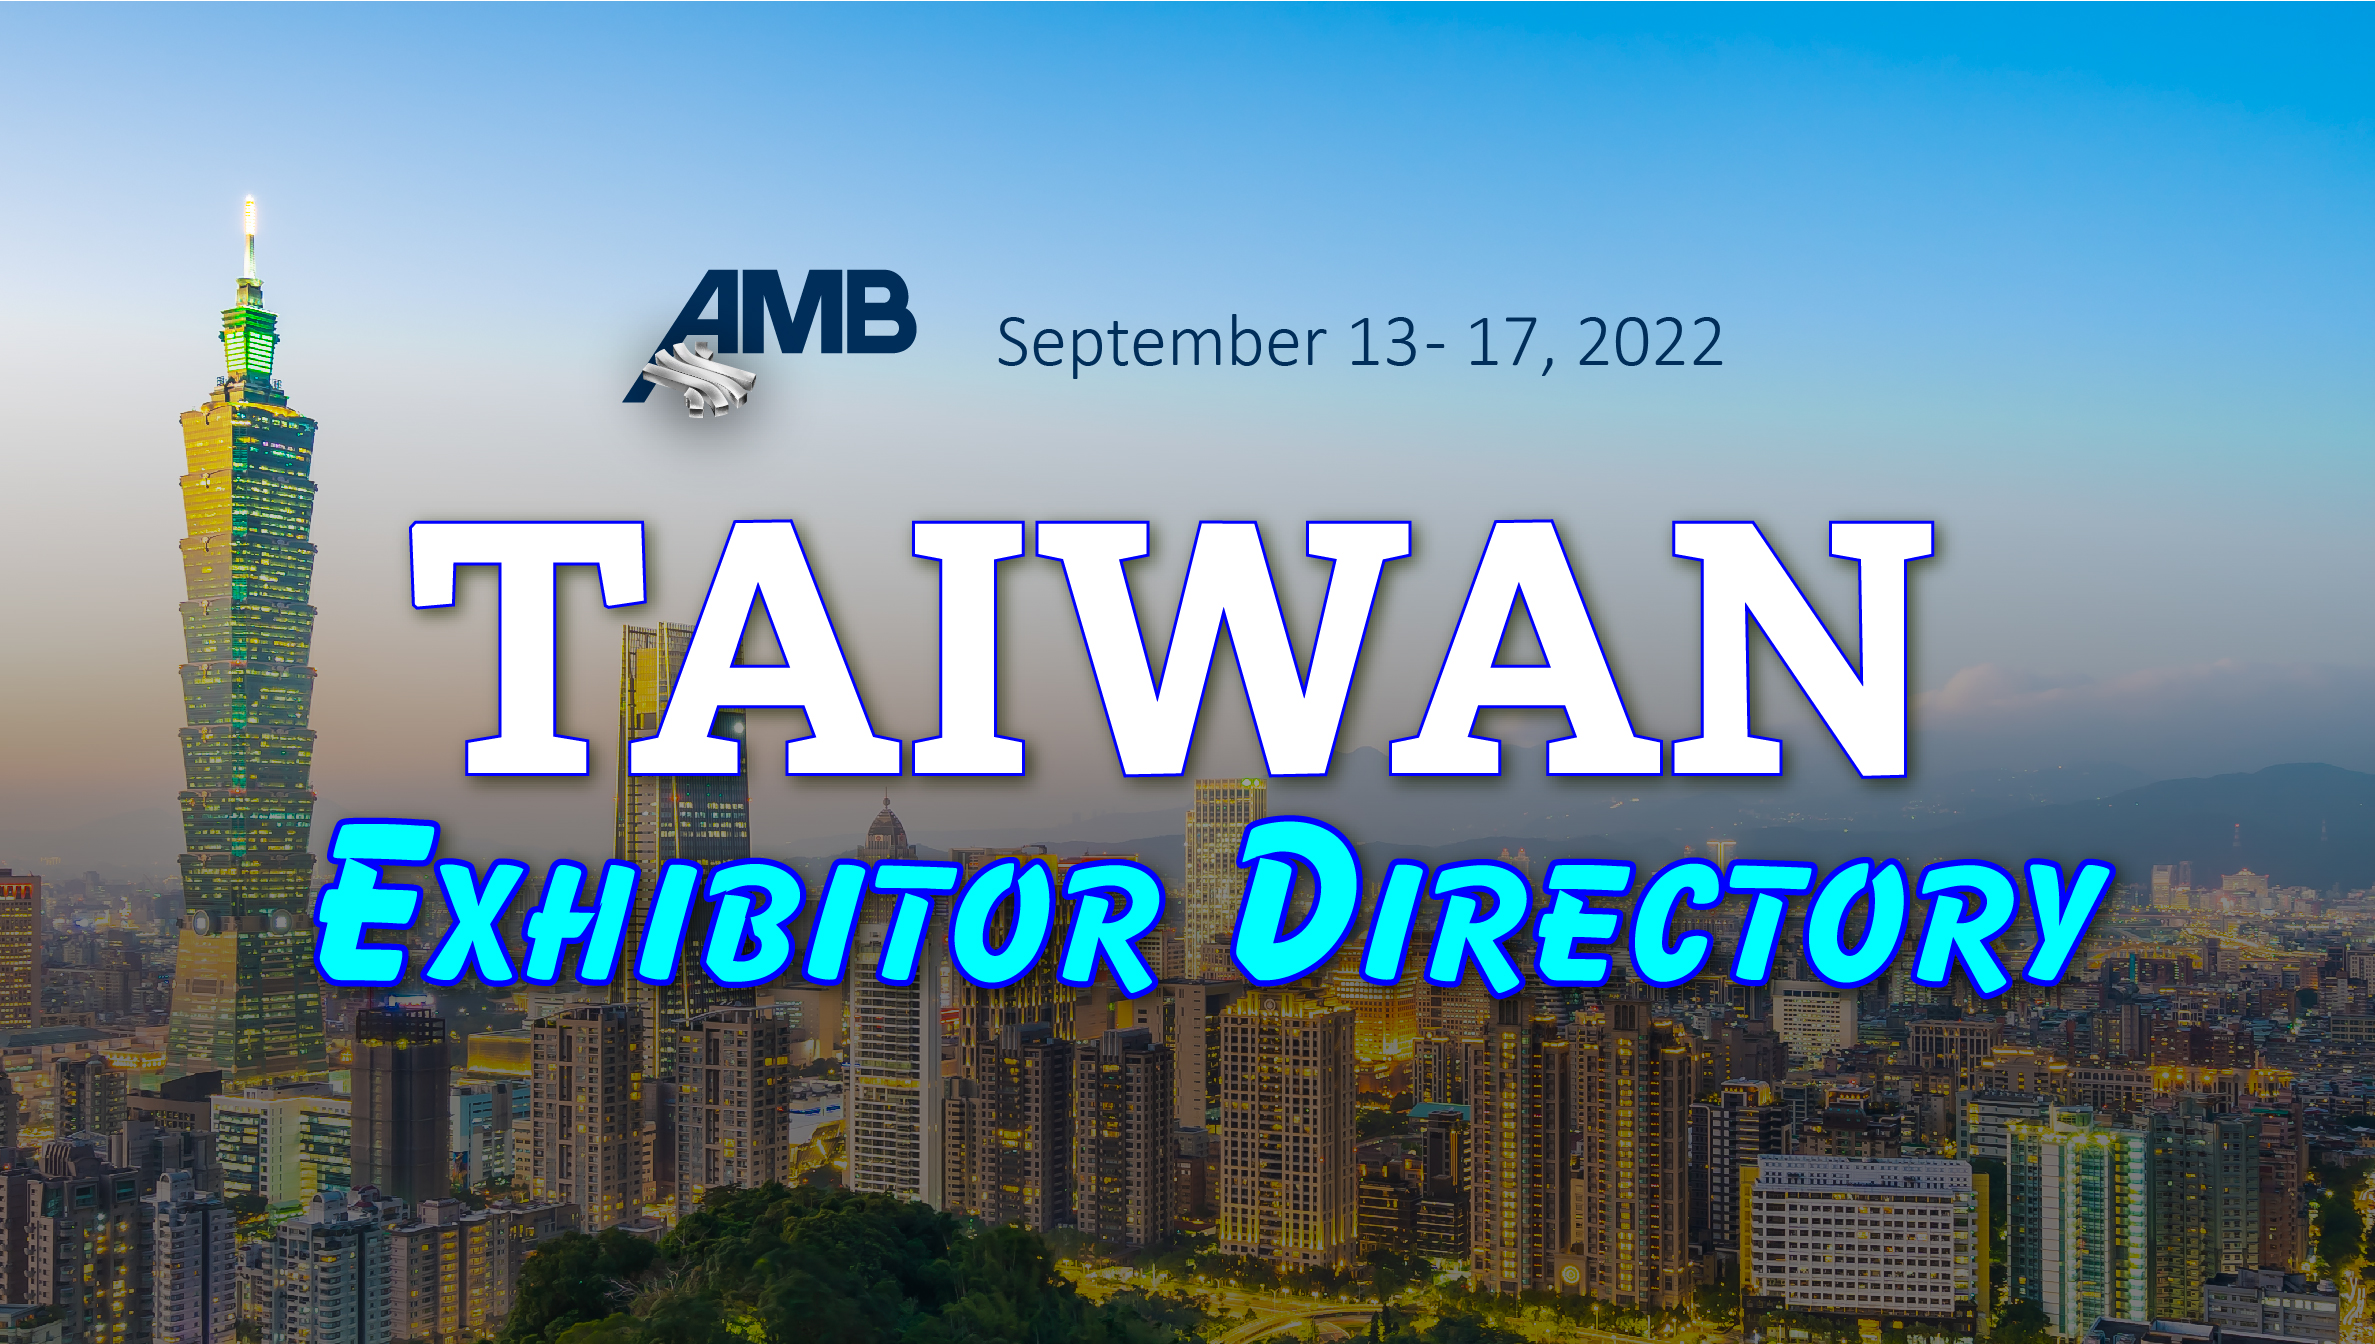 2022 AMB Taiwan Exhibitor Directory